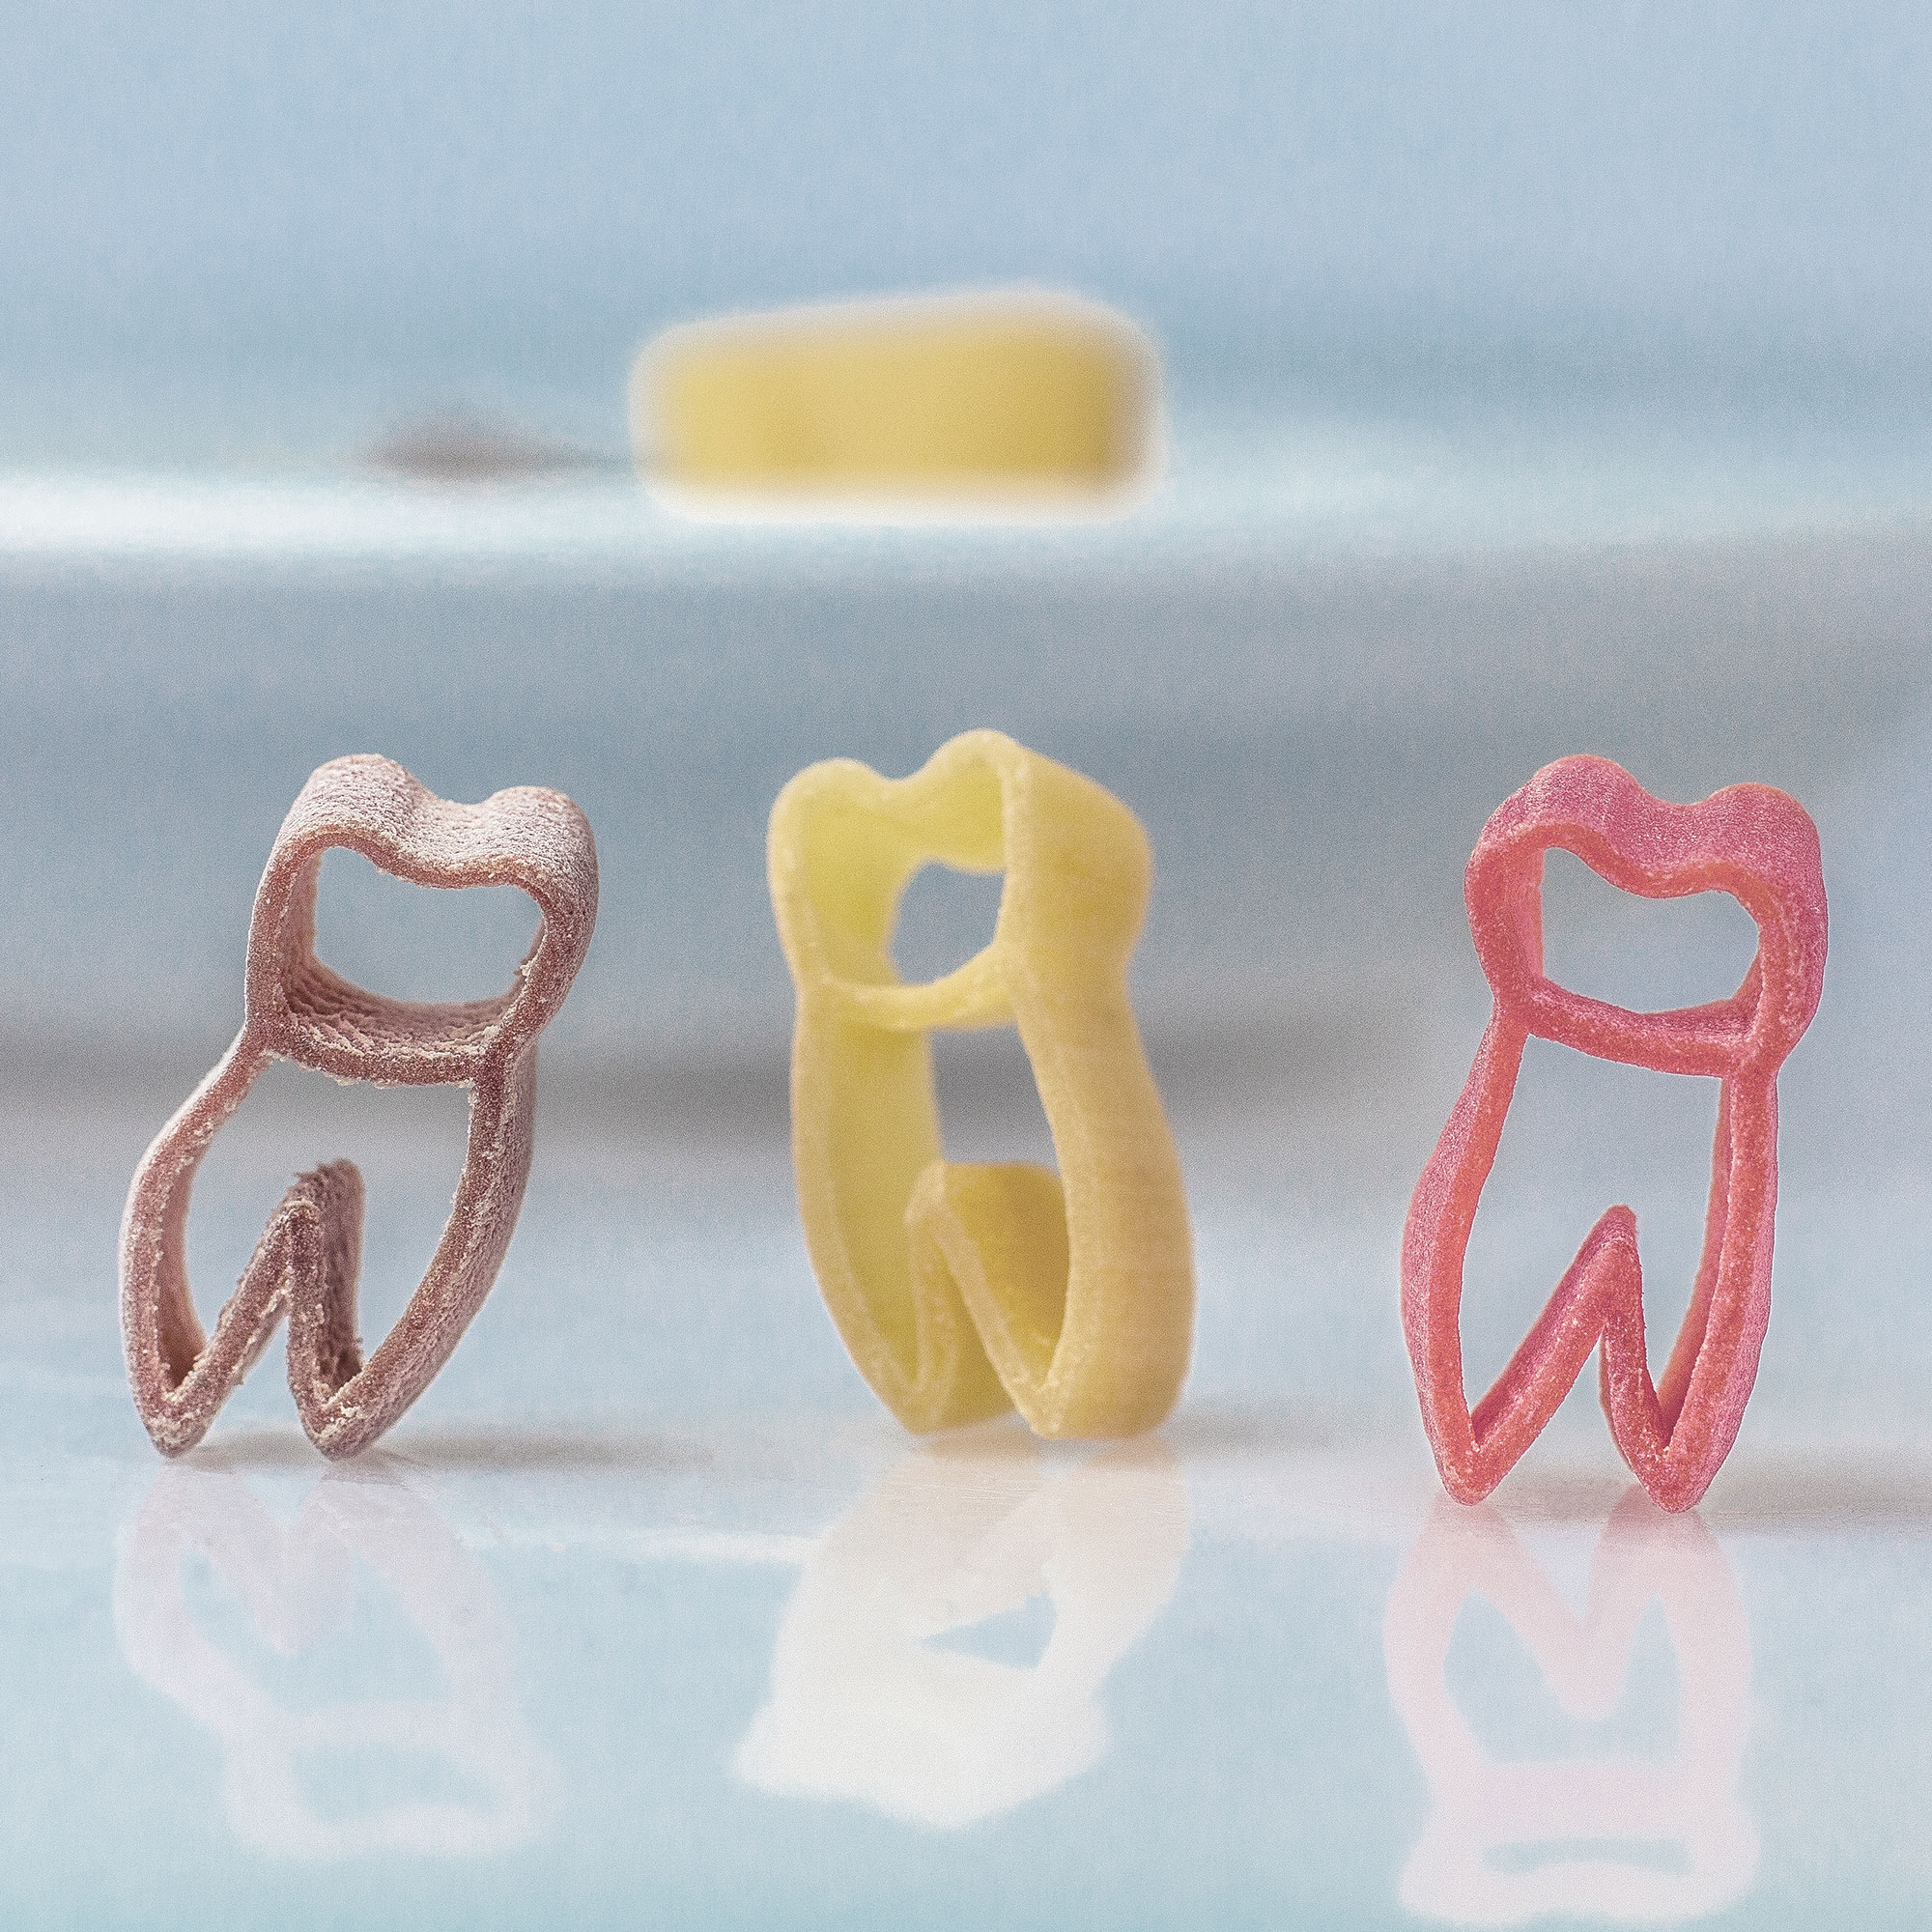 Zahn Pasta - besondere Nudeln als Geschenk für Zahnärzte, bunte Hartweizennudeln in Zahnform - 250 Gramm, witzige Zahnnudeln in 3 Farben